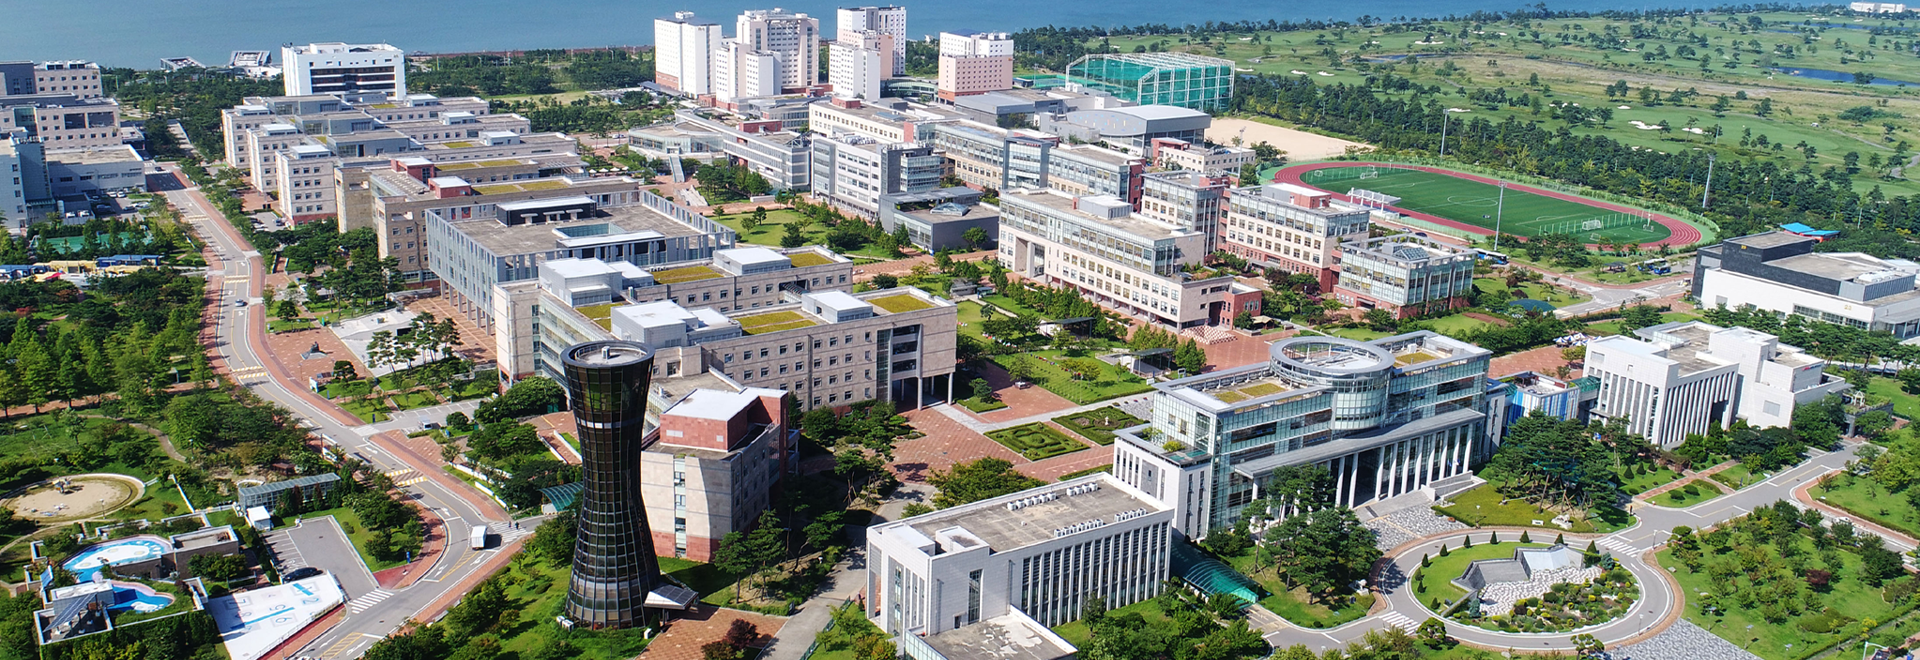 INU Campus